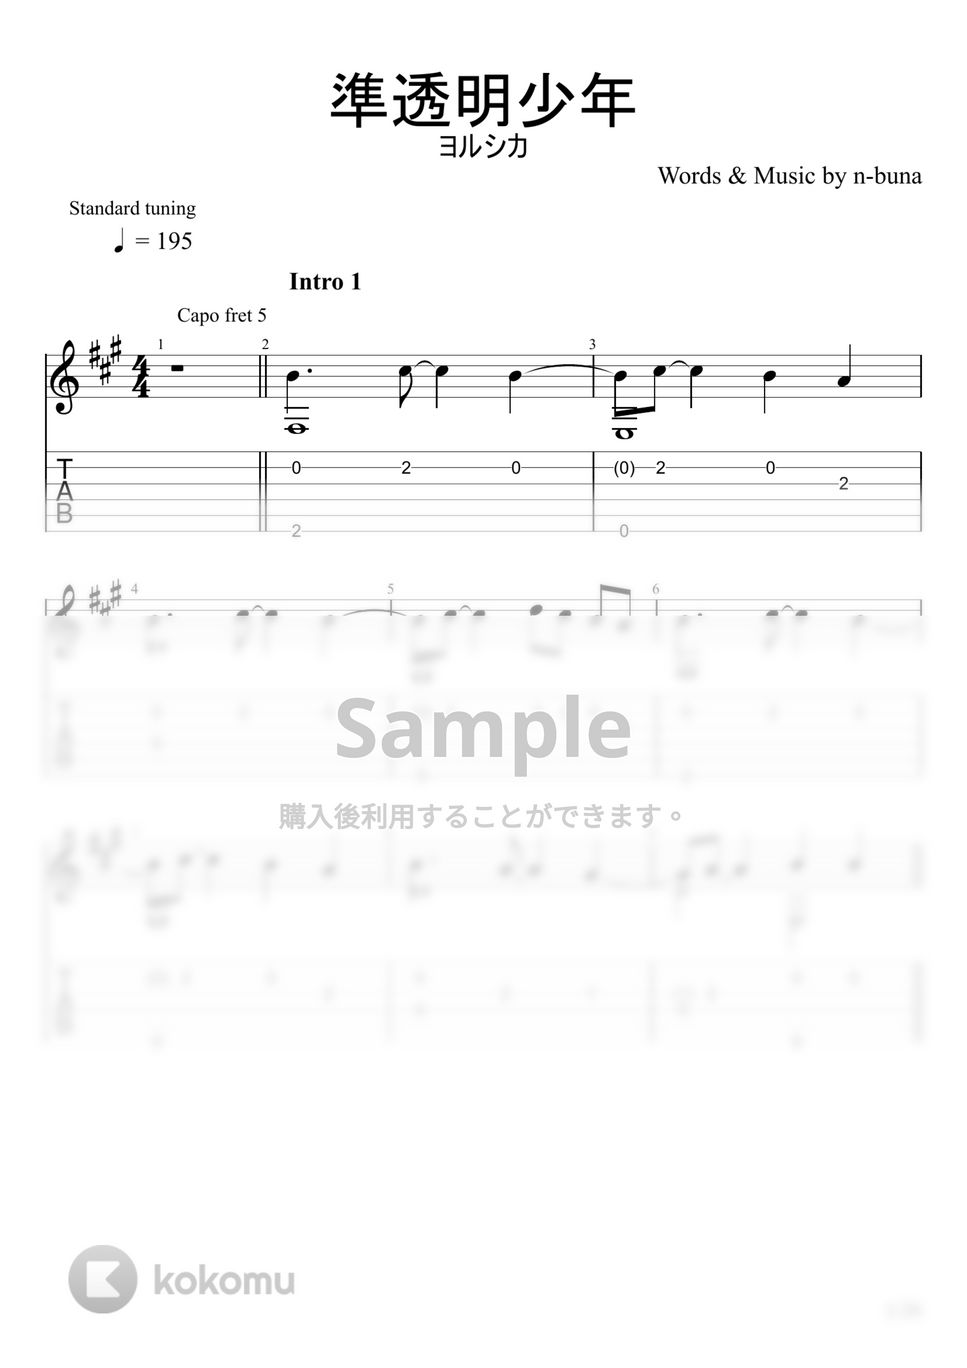 ヨルシカ - 準透明少年 (ソロギター) by u3danchou